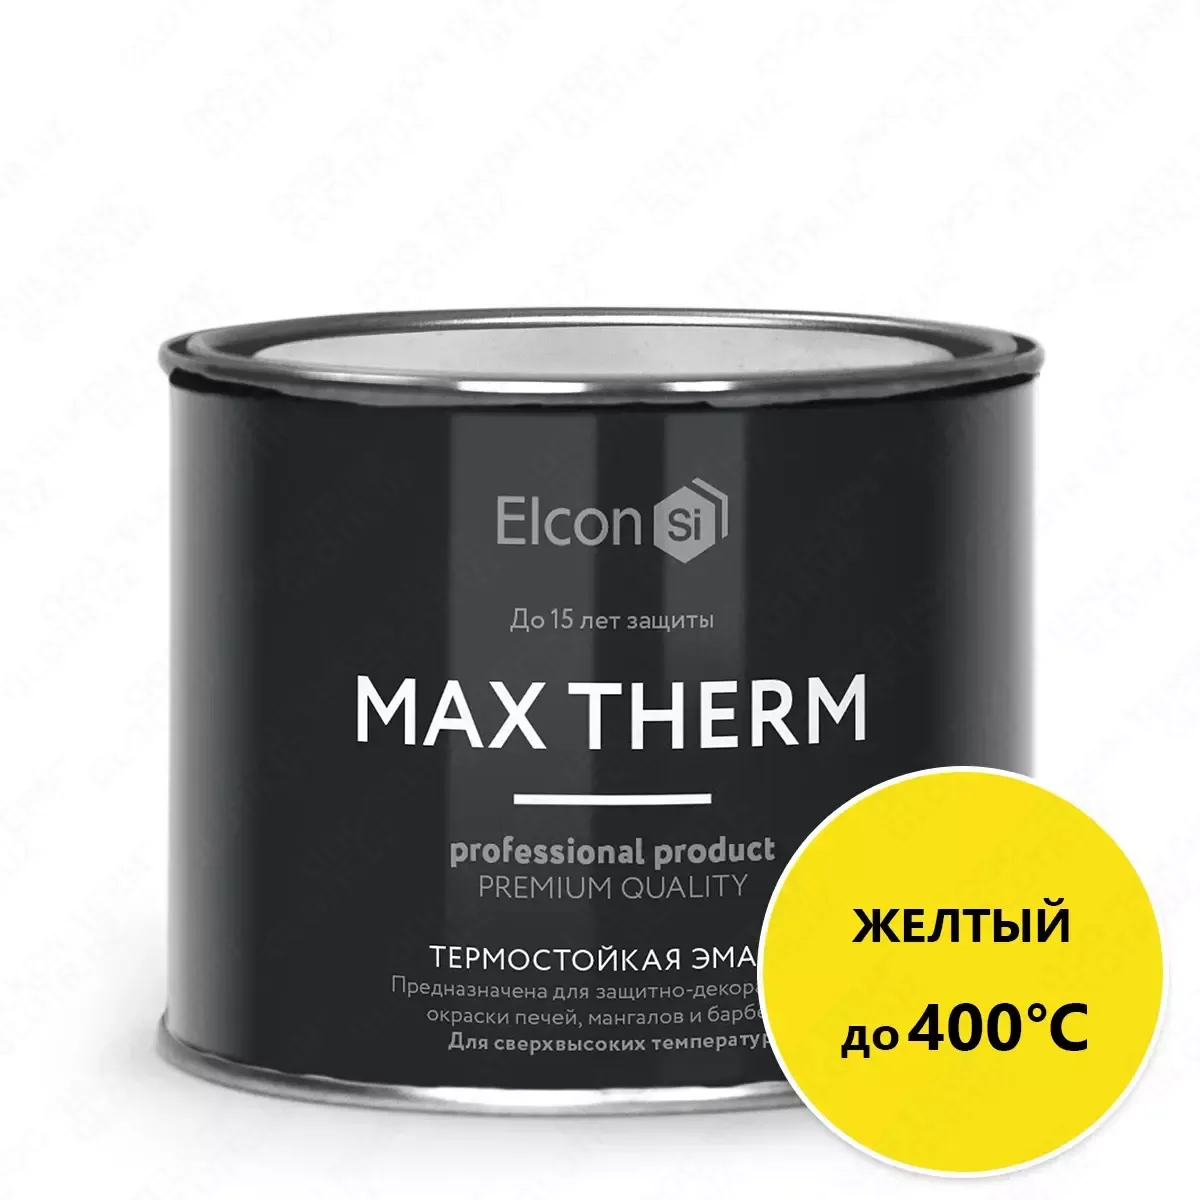 Термостойкая антикоррозийная эмаль Max Therm желтый 0,4кг; 400°С#1